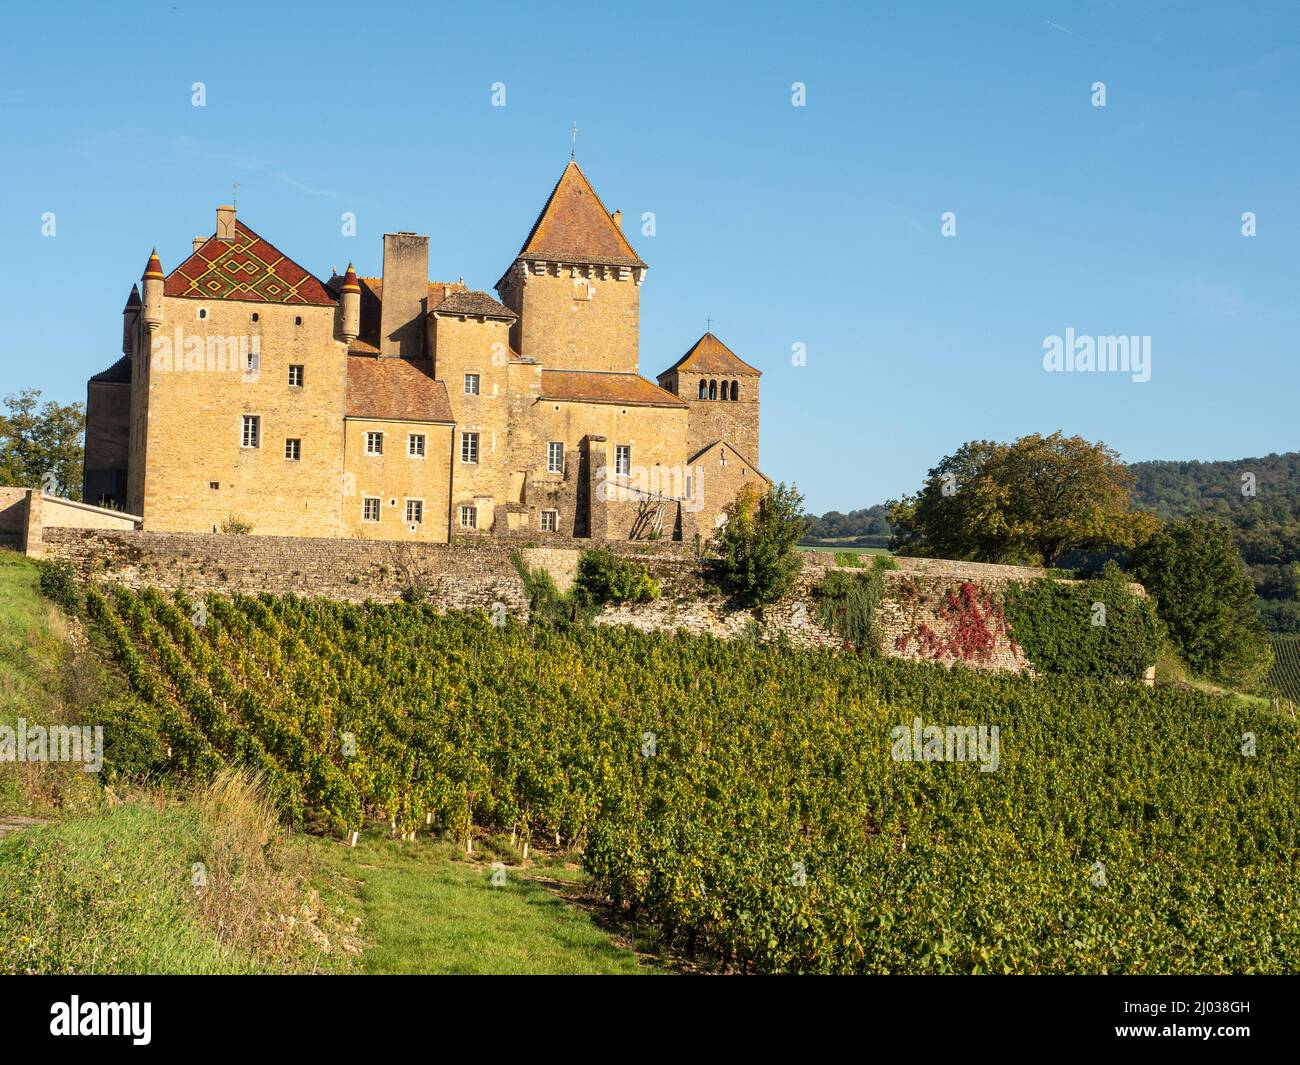 Le Château de Pierreclos et la cave de vinification près de Macon, Saône-et-Loire, Bourgogne, France, Europe Banque D'Images